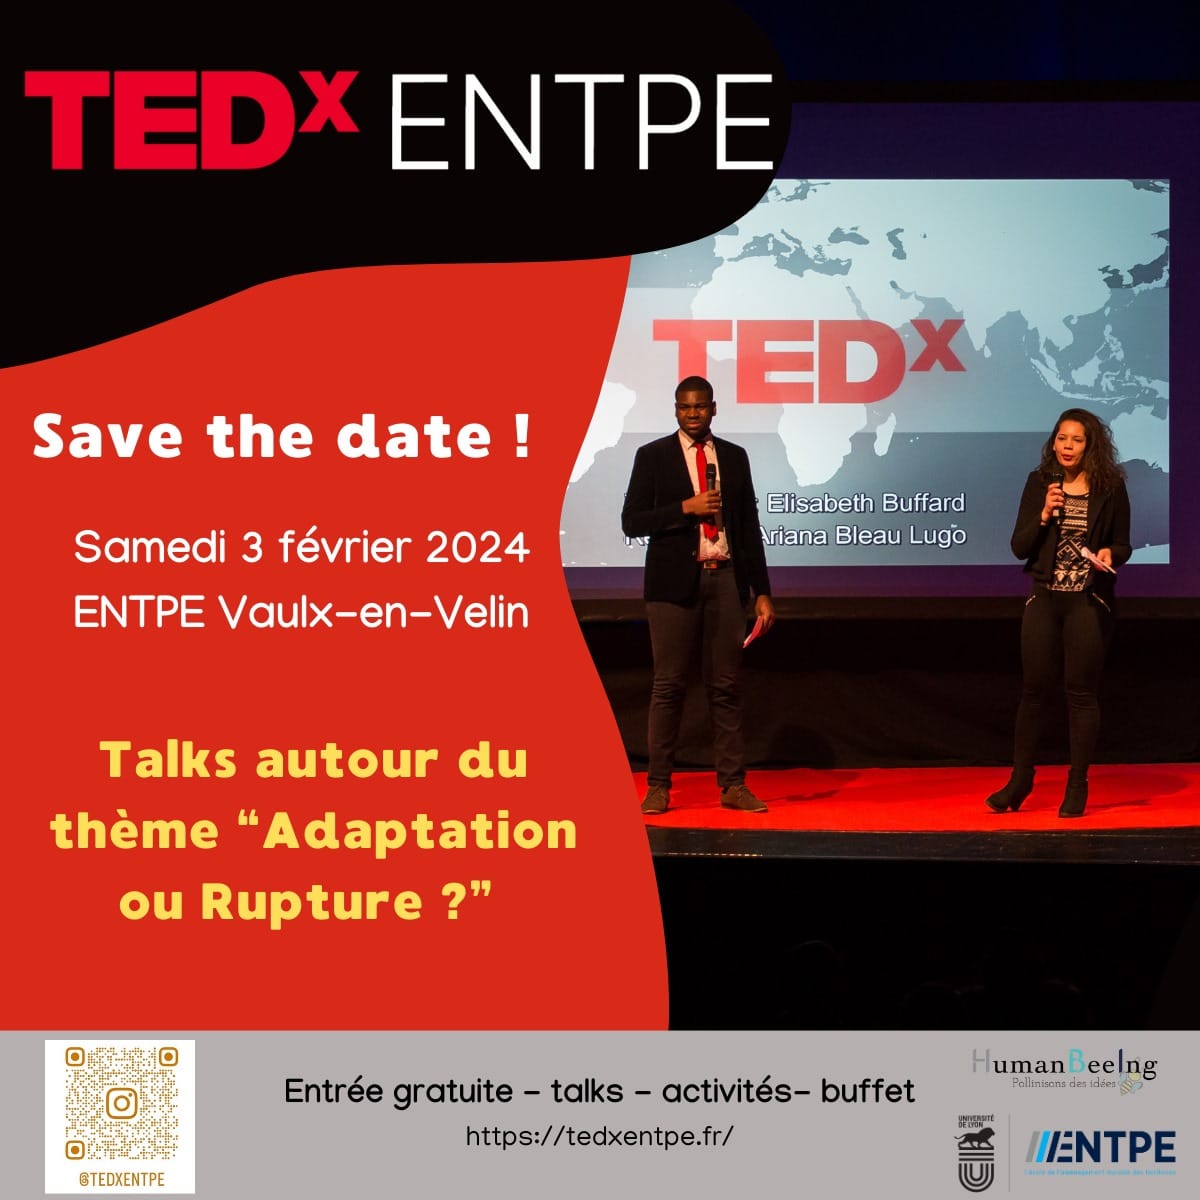 TEDx ENTPE - Adaptation ou rupture ? - samedi 3 février 2024